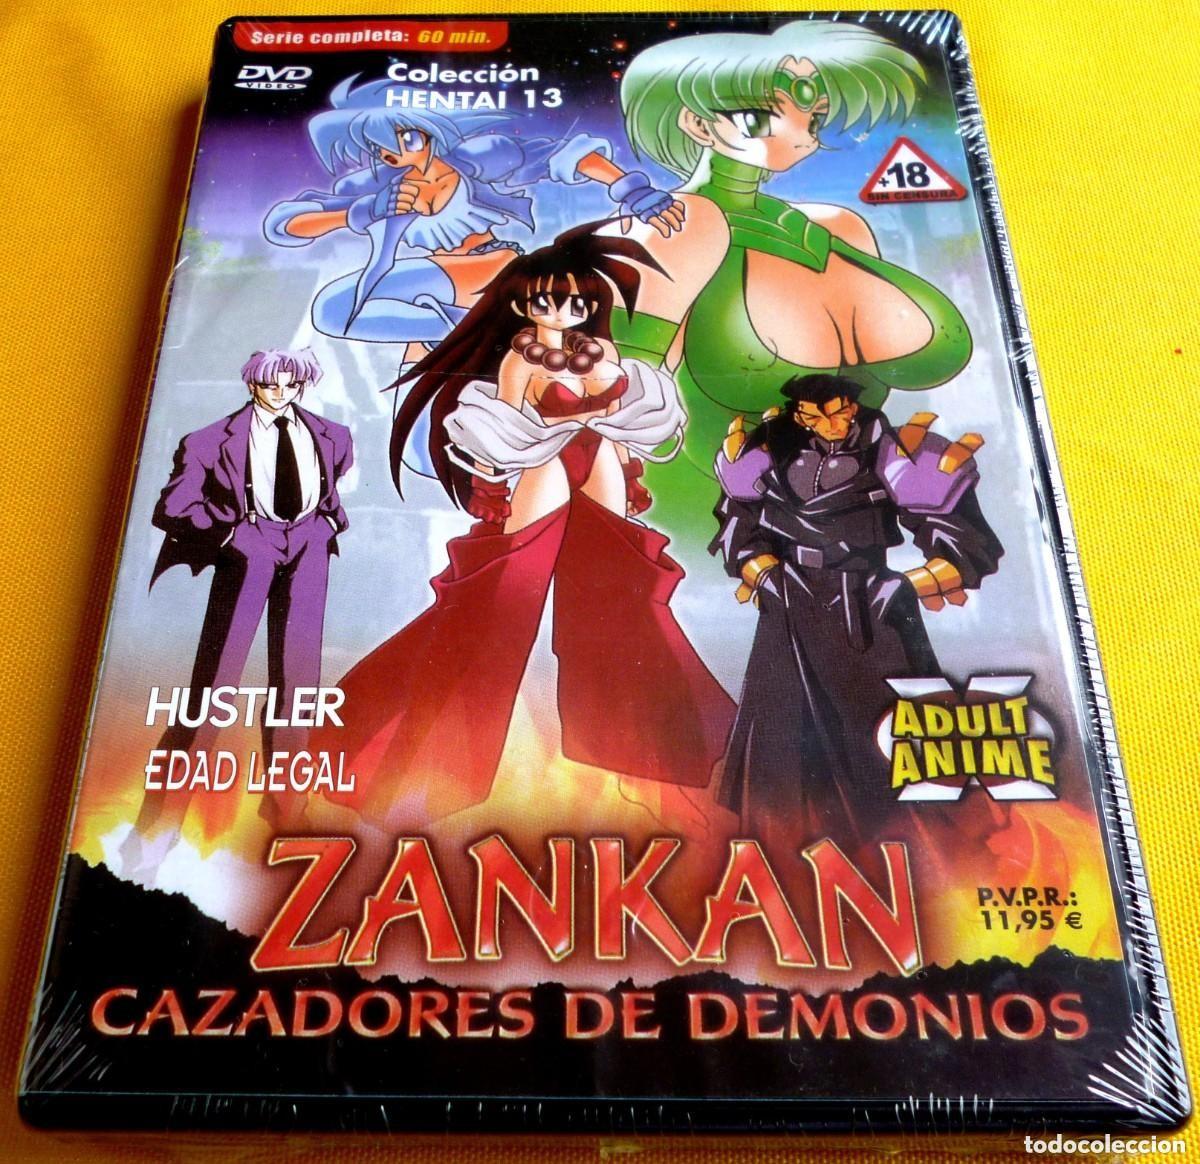 zankan , cazadores de demonios – anime hentai - - Comprar Filmes para  adultos no todocoleccion